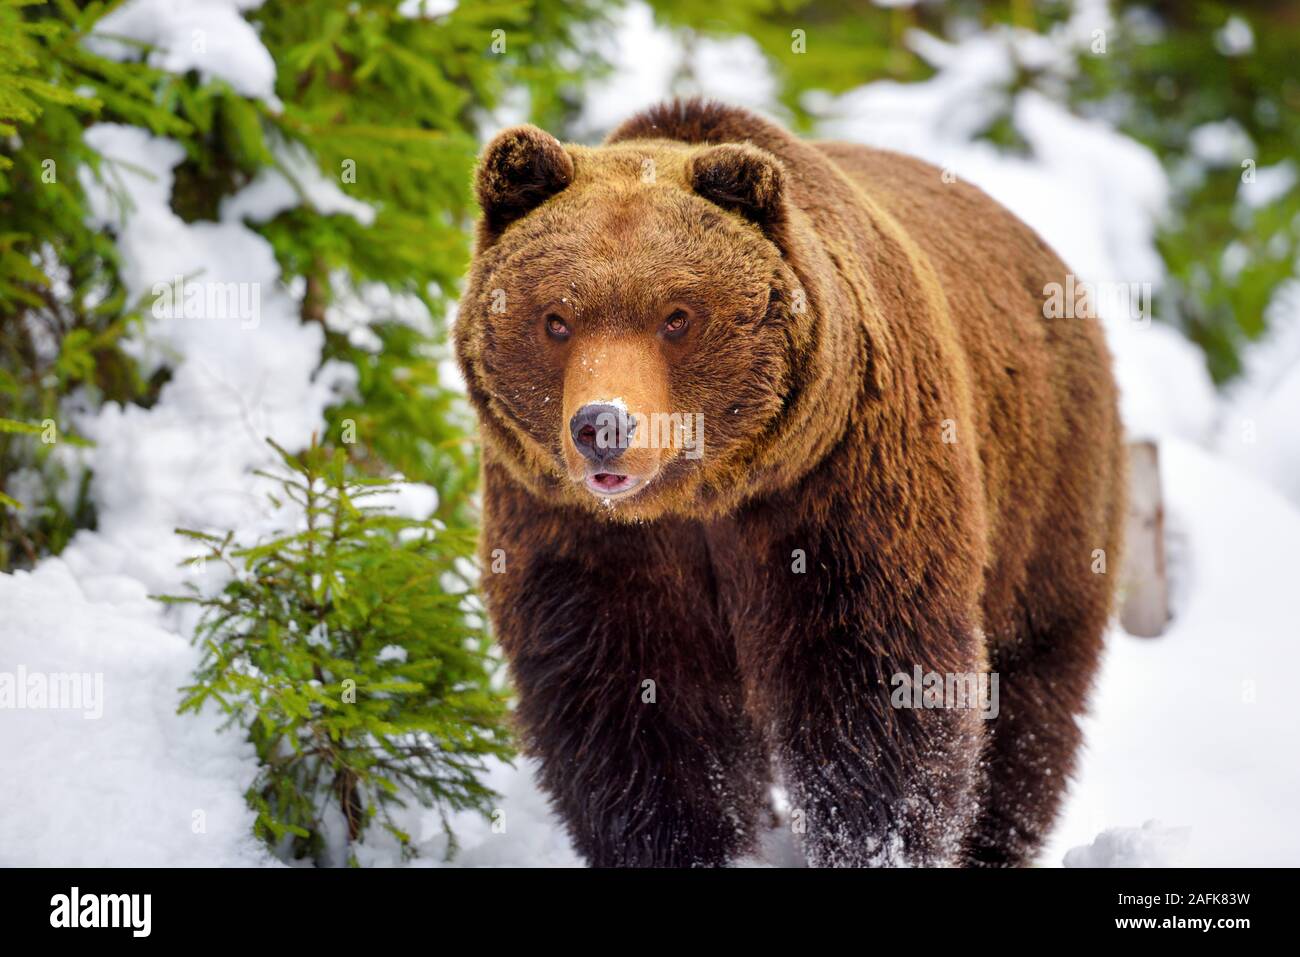 L'ours brun (Ursus arctos) dans son habitat naturel Banque D'Images